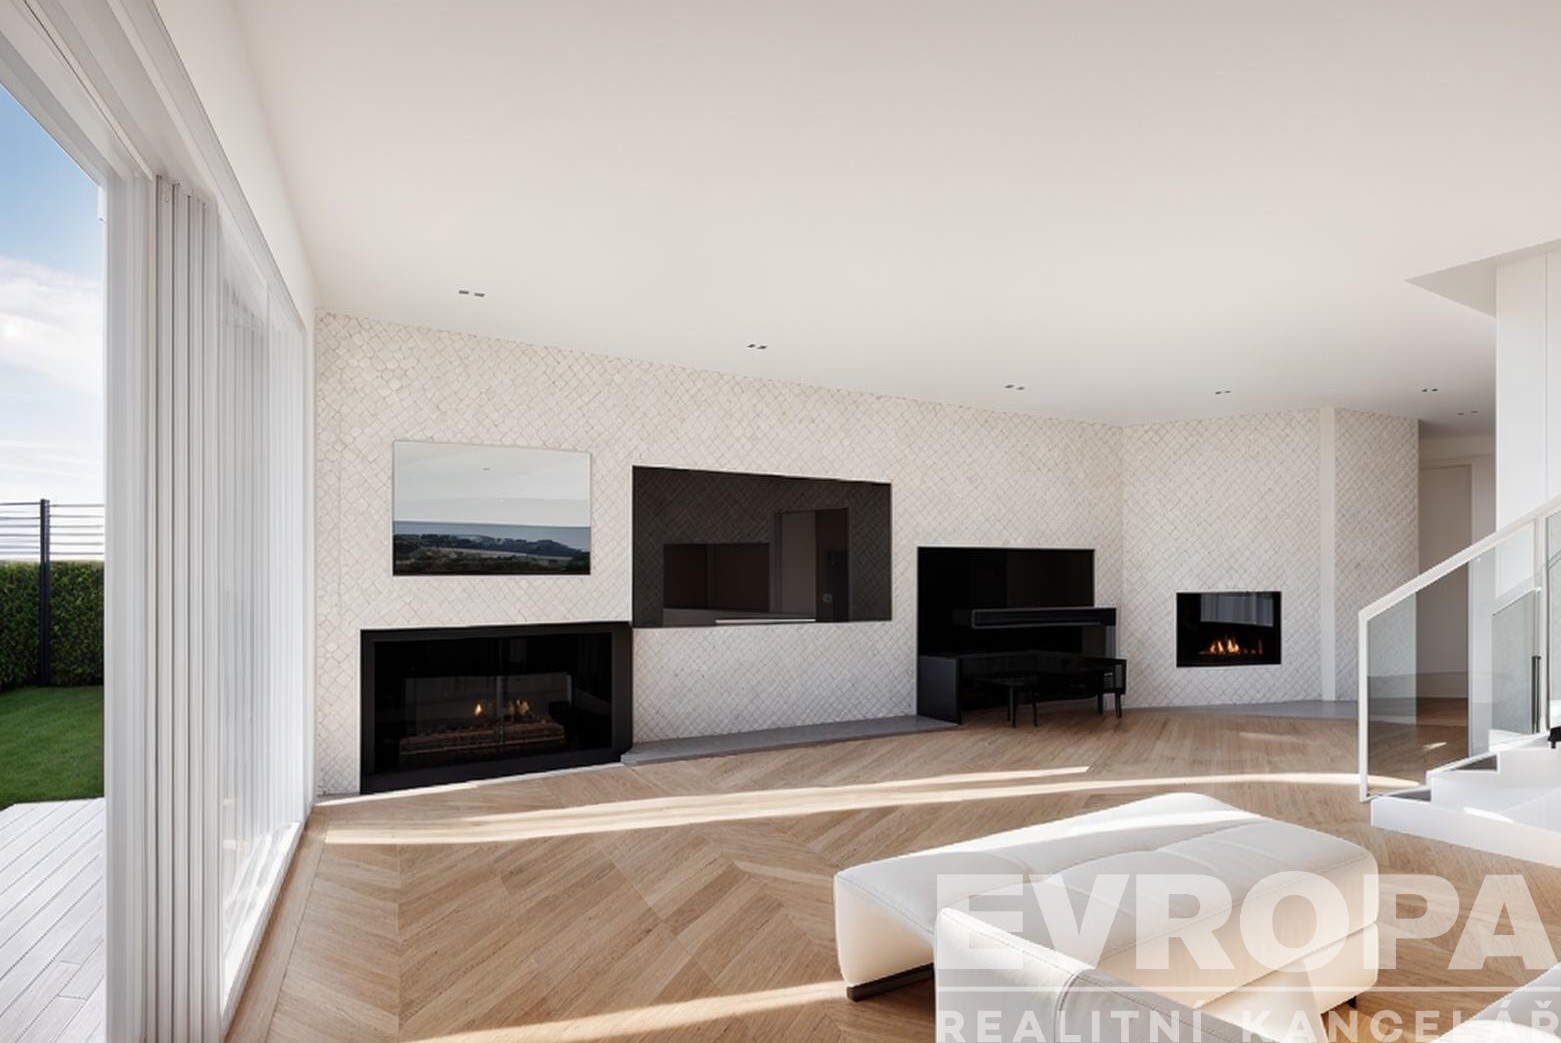 obývací pokoj s parketová podlaha, přirozené světlo, a krb